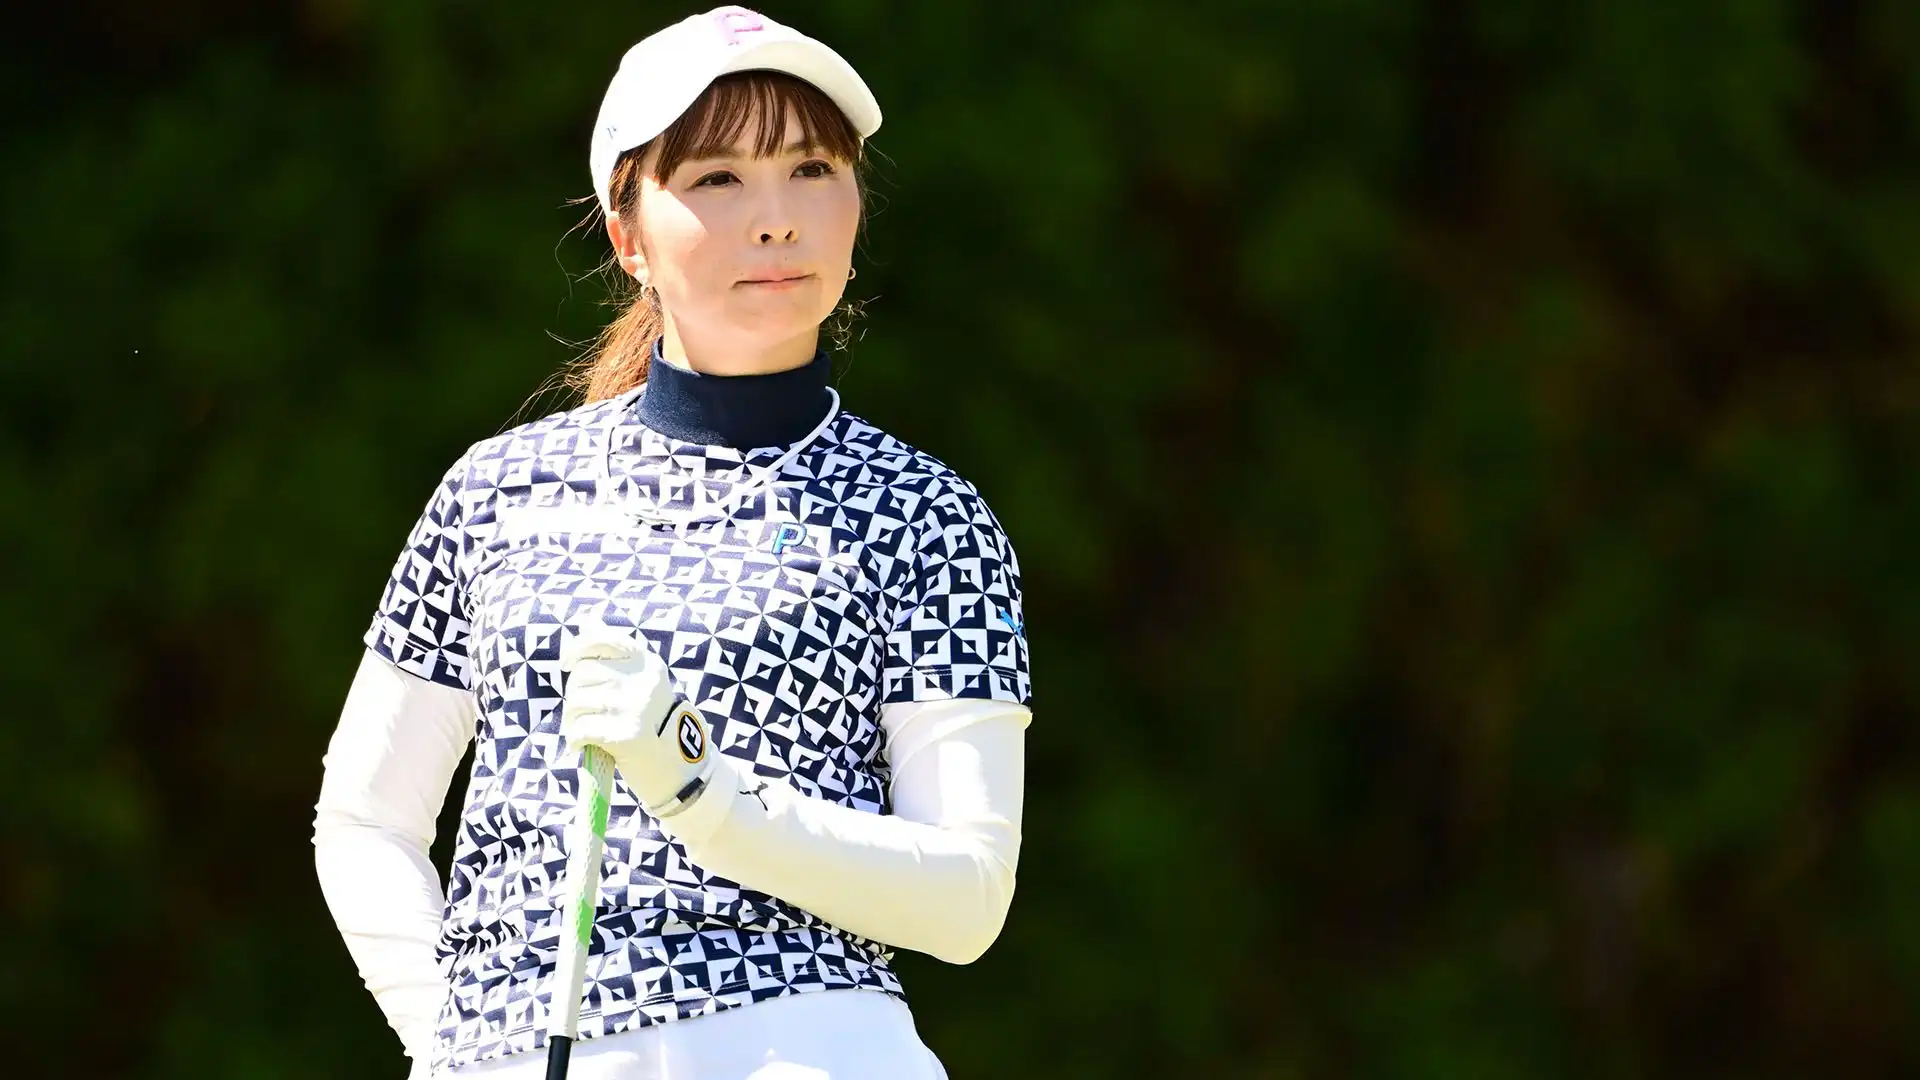 5 Erika Kikuchi: premi in denaro ¥11,487,142. Ha partecipato a 3 tornei